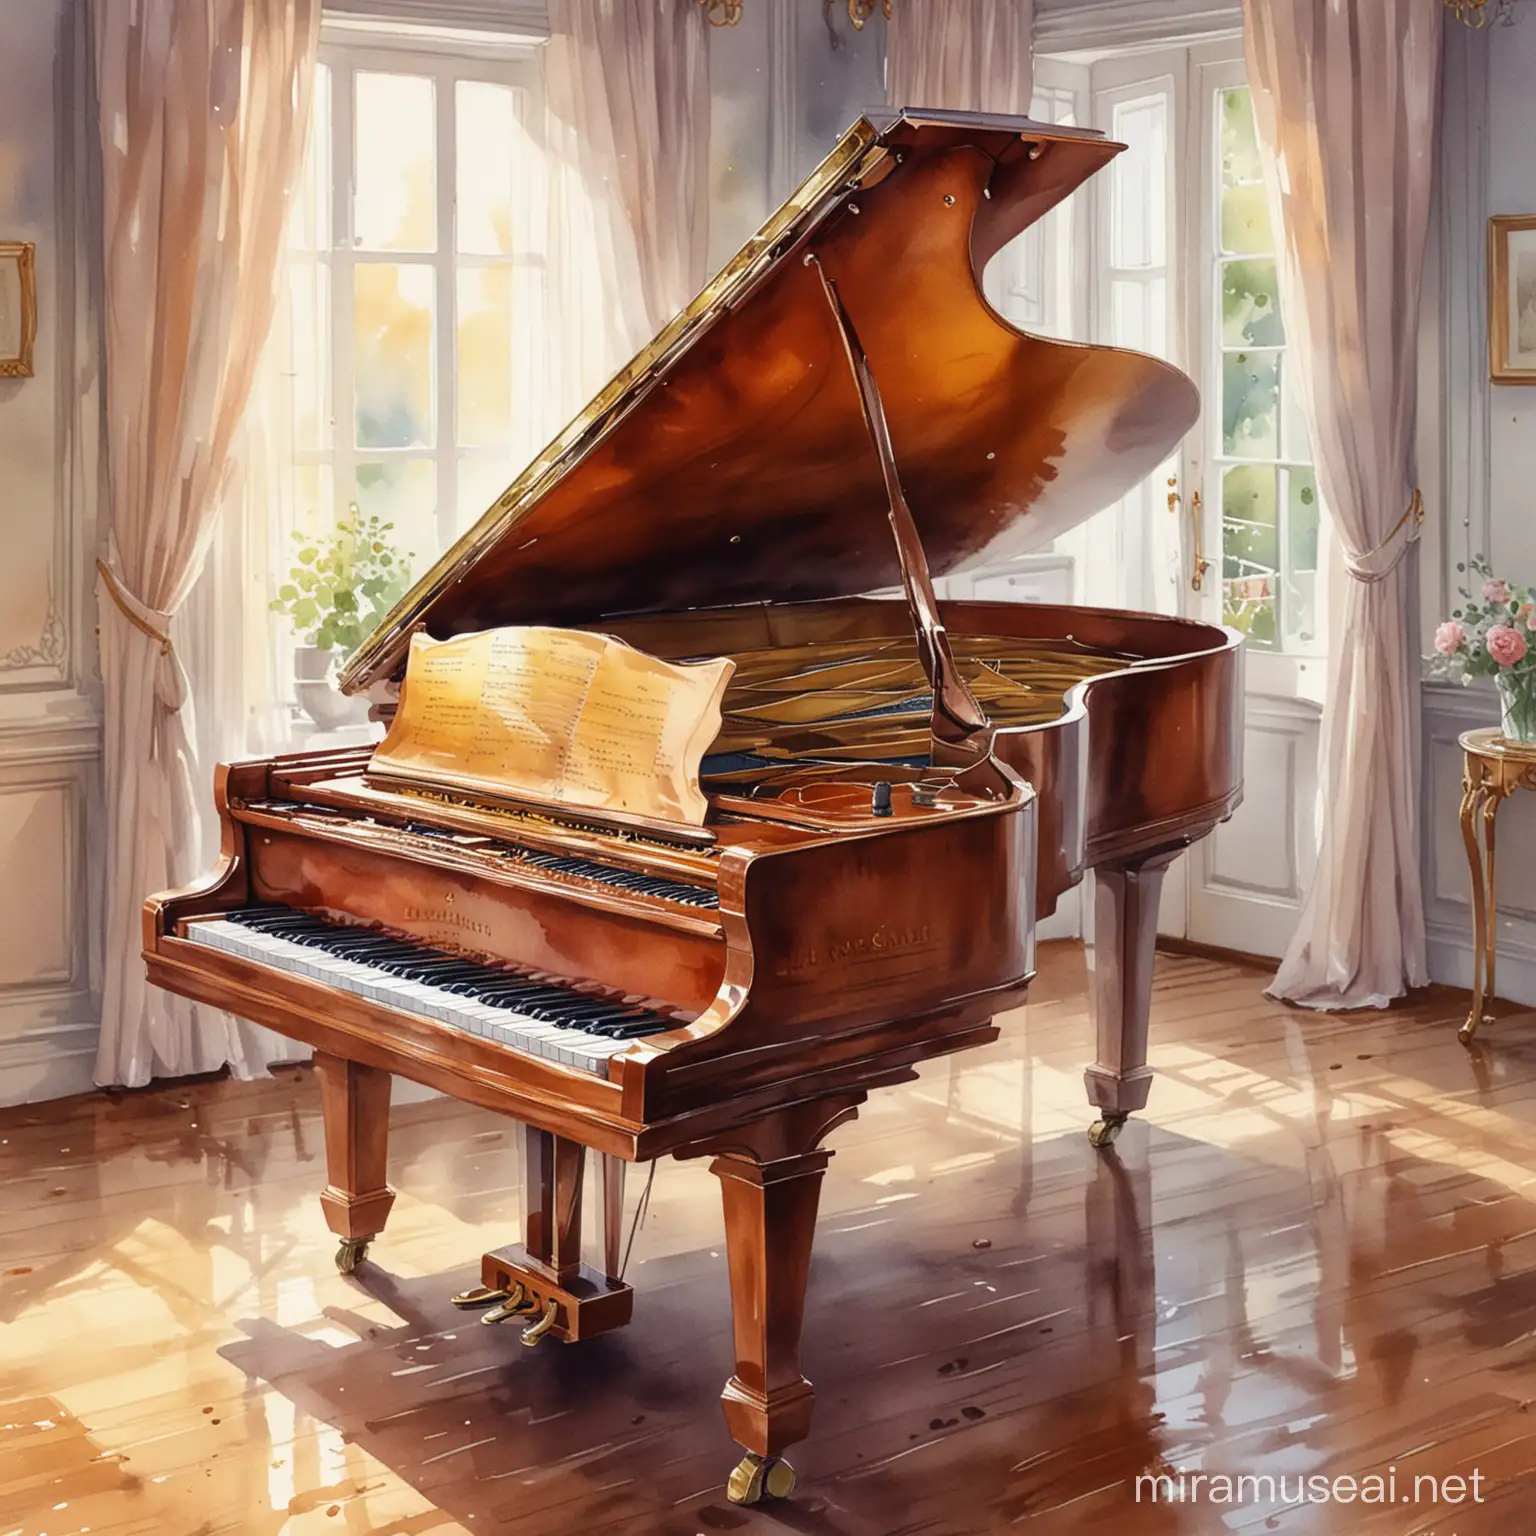 Detailed Watercolor Grand Piano Art Inspired by Zlatyu Boyadzhiev